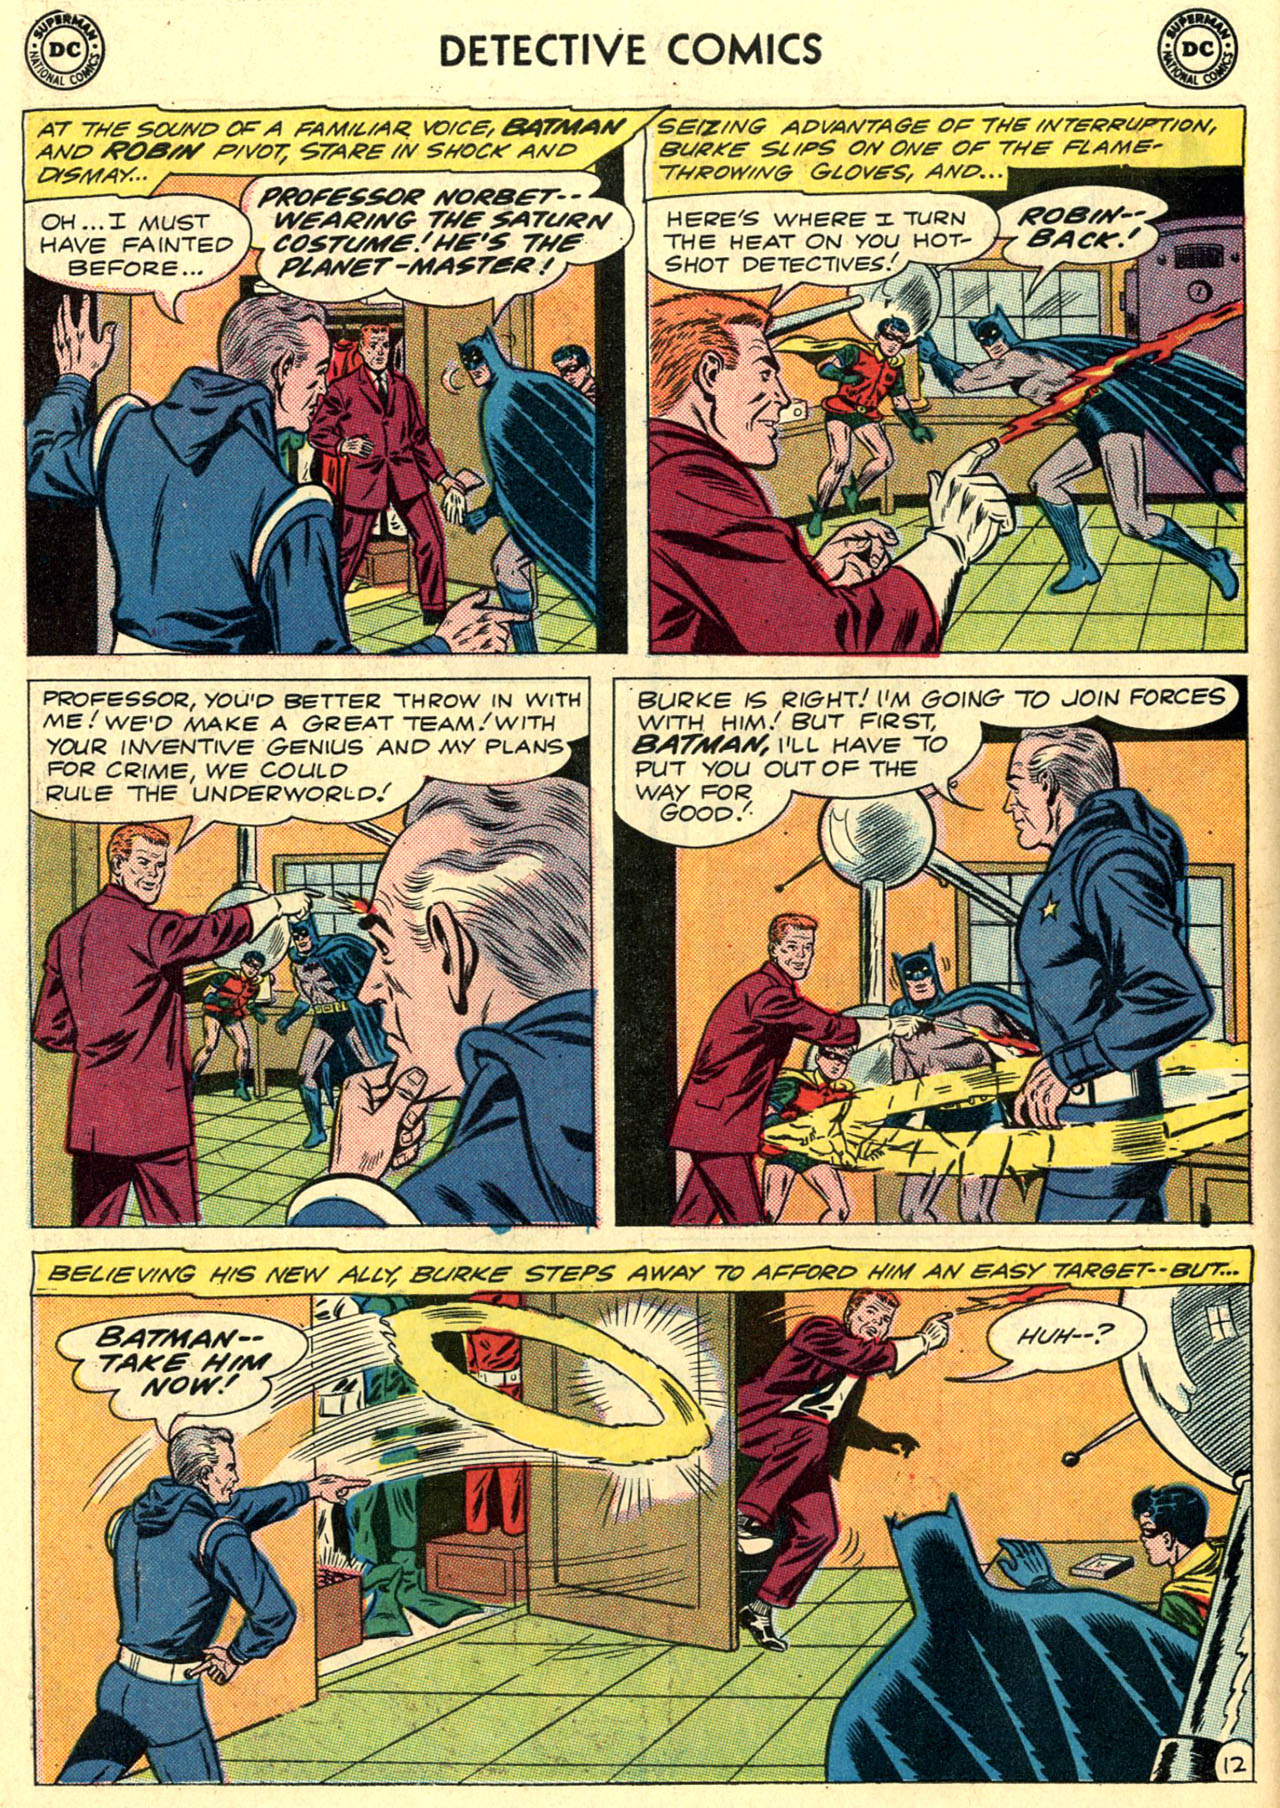 Detective Comics V1 0296 | Read Detective Comics V1 0296 comic 